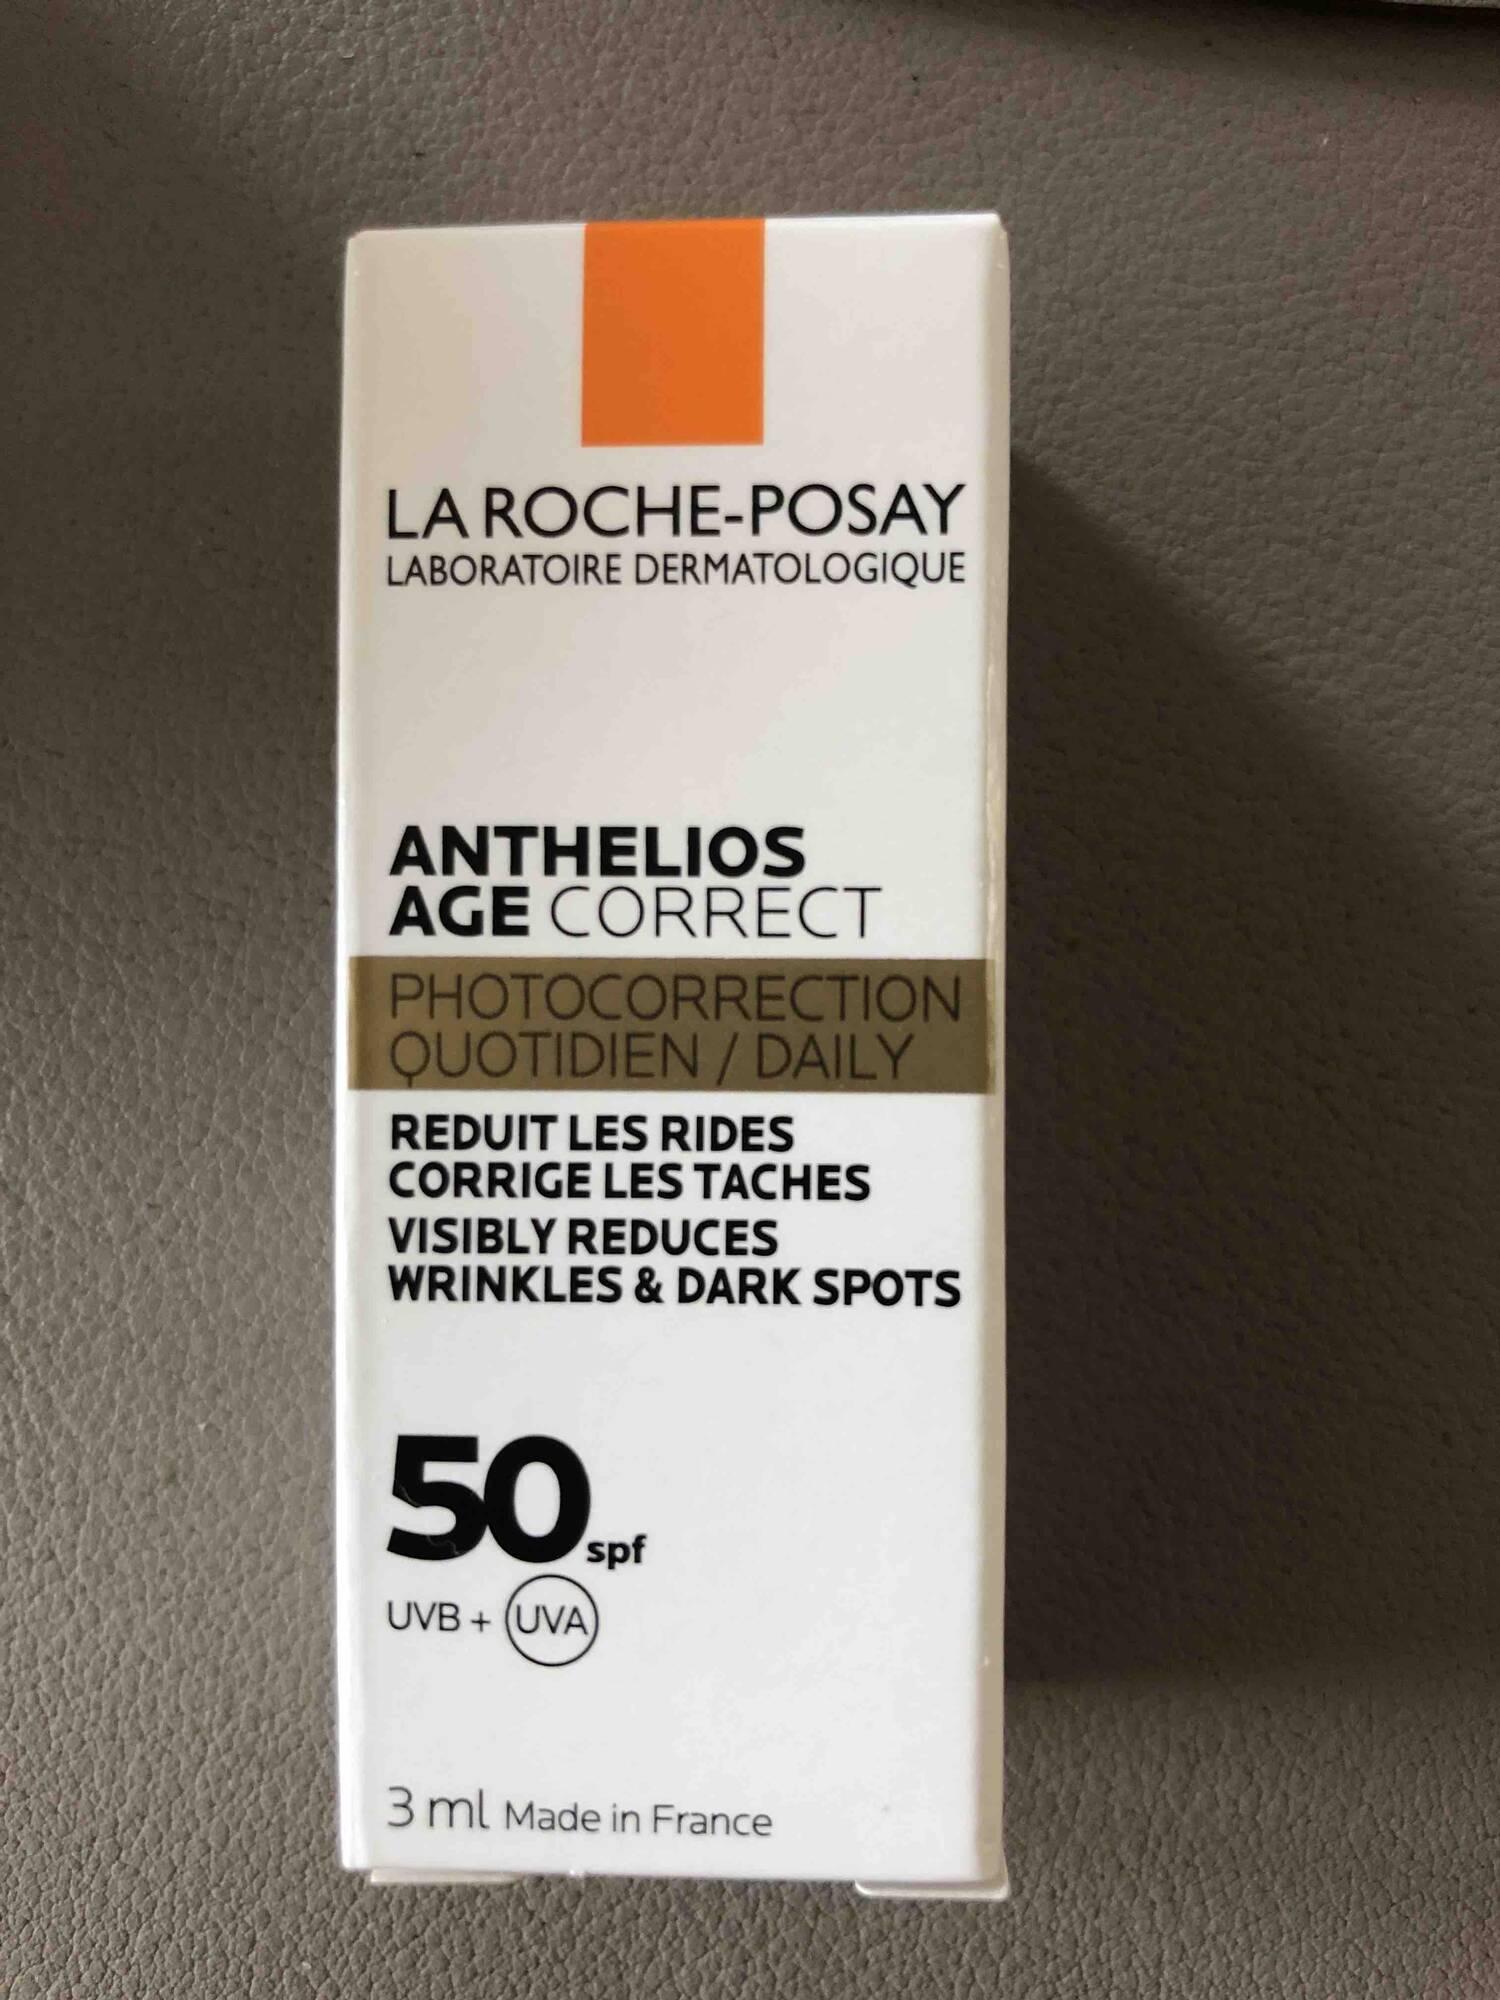 LA ROCHE-POSAY - Anthelios age correct - Reduit des rides corrige les taches 50SPF